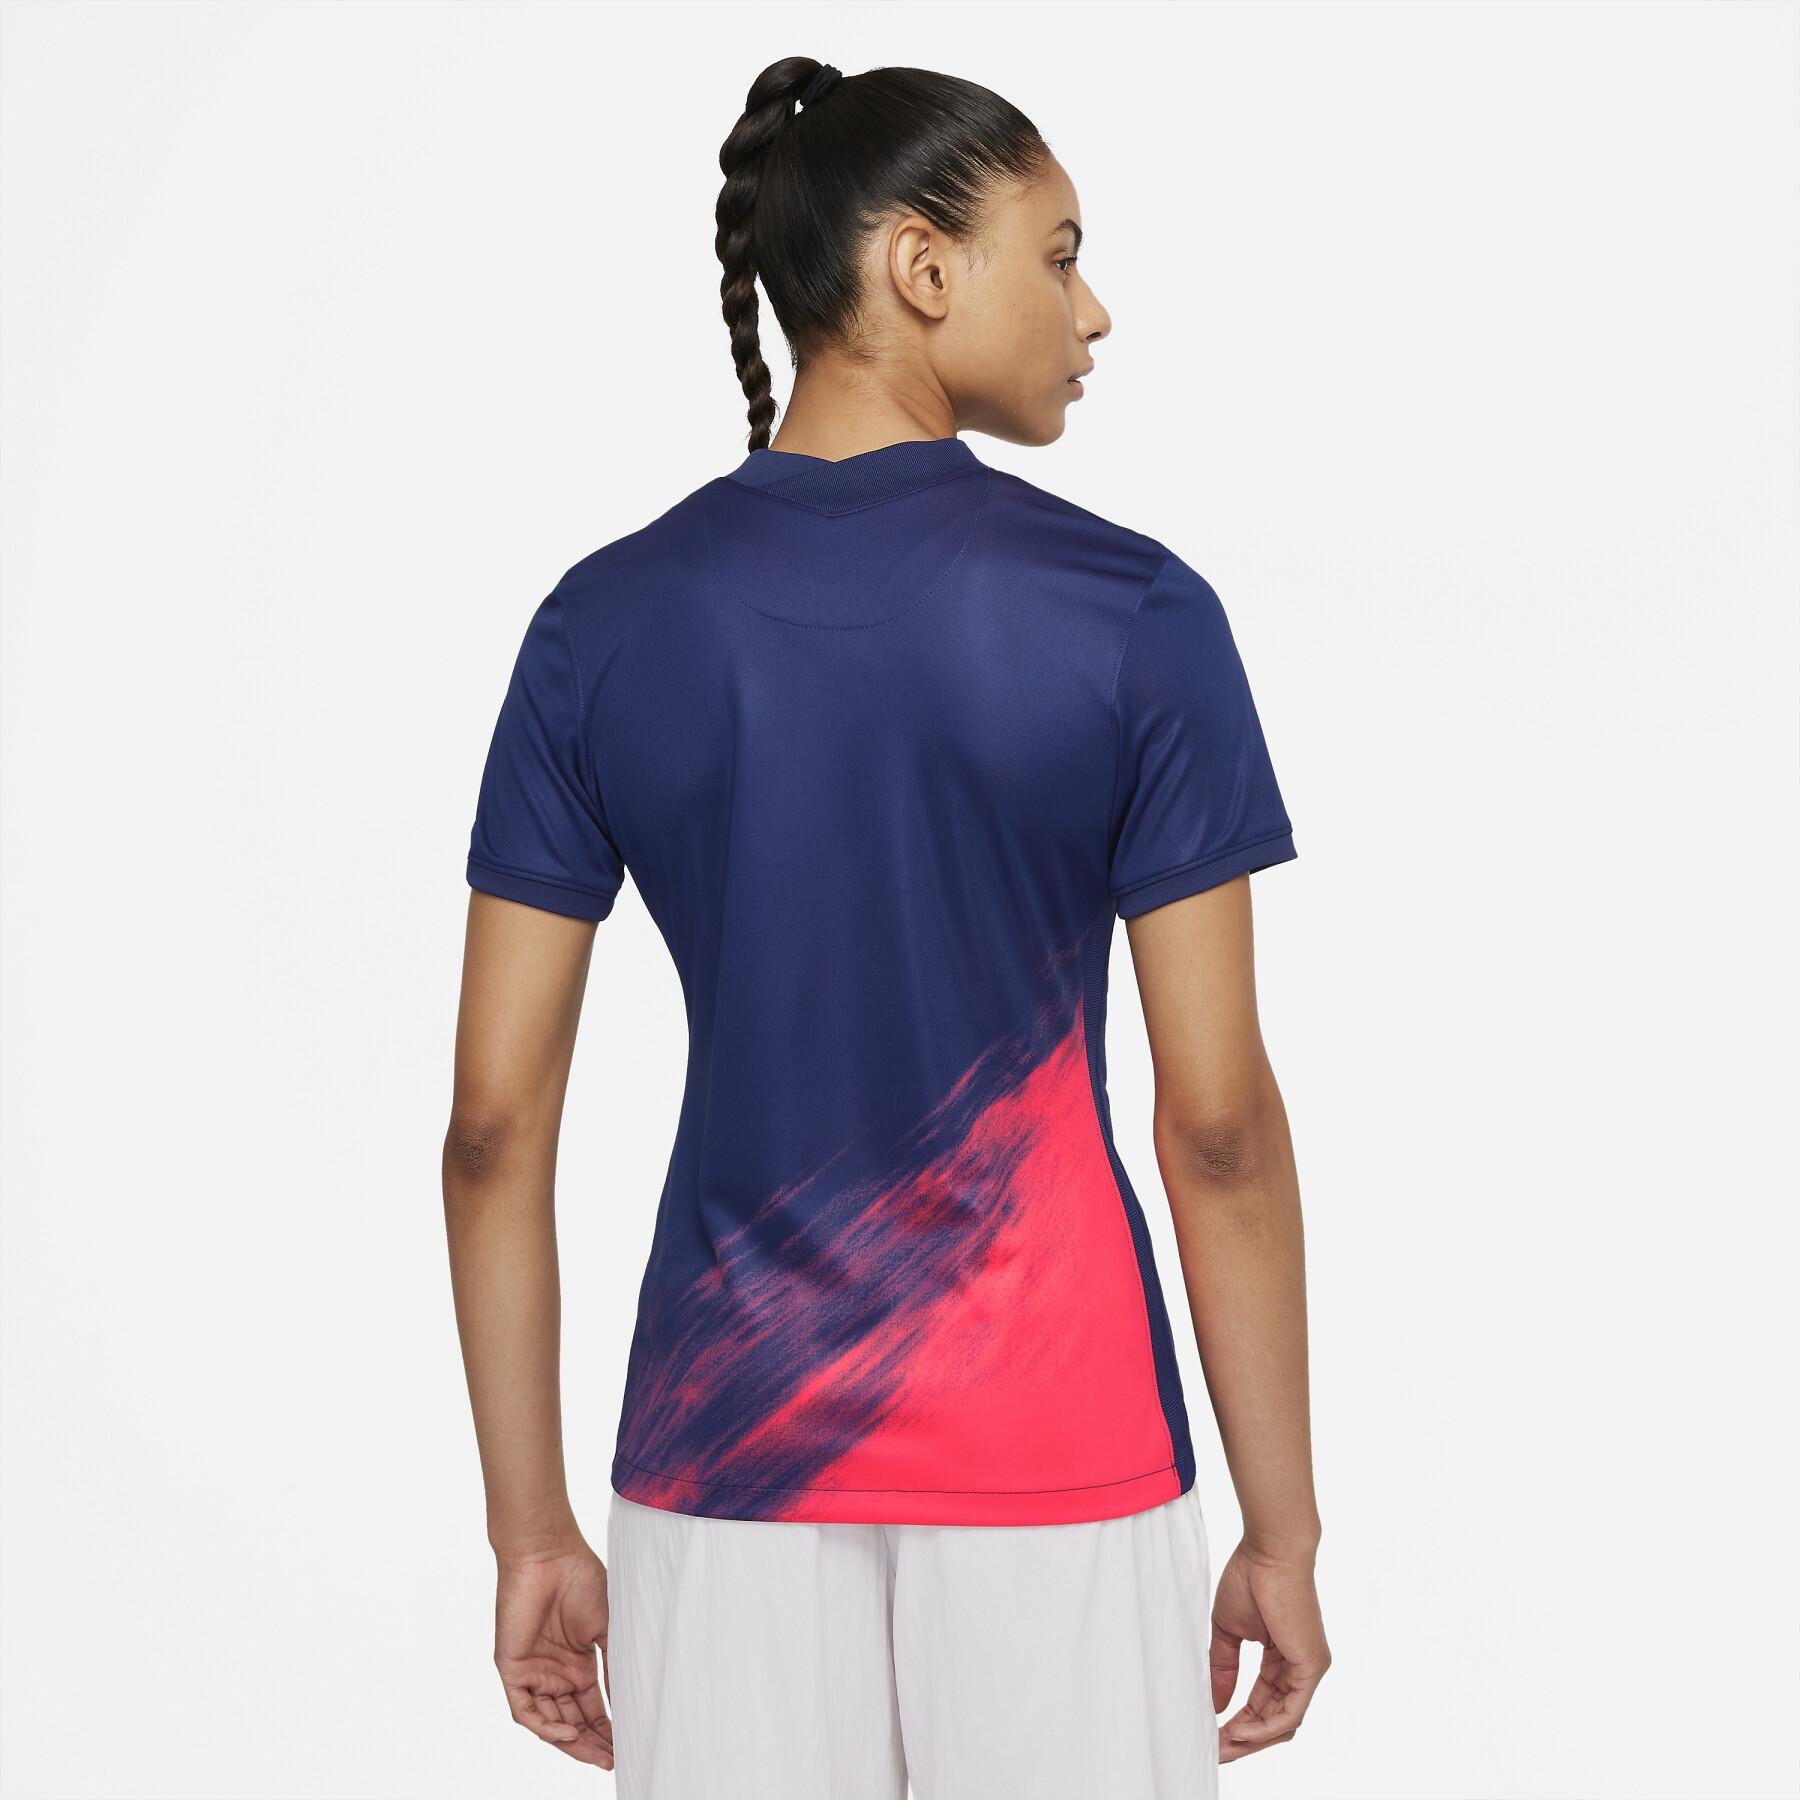 Camiseta segunda equipación mujer Atlético Madrid 2021/22